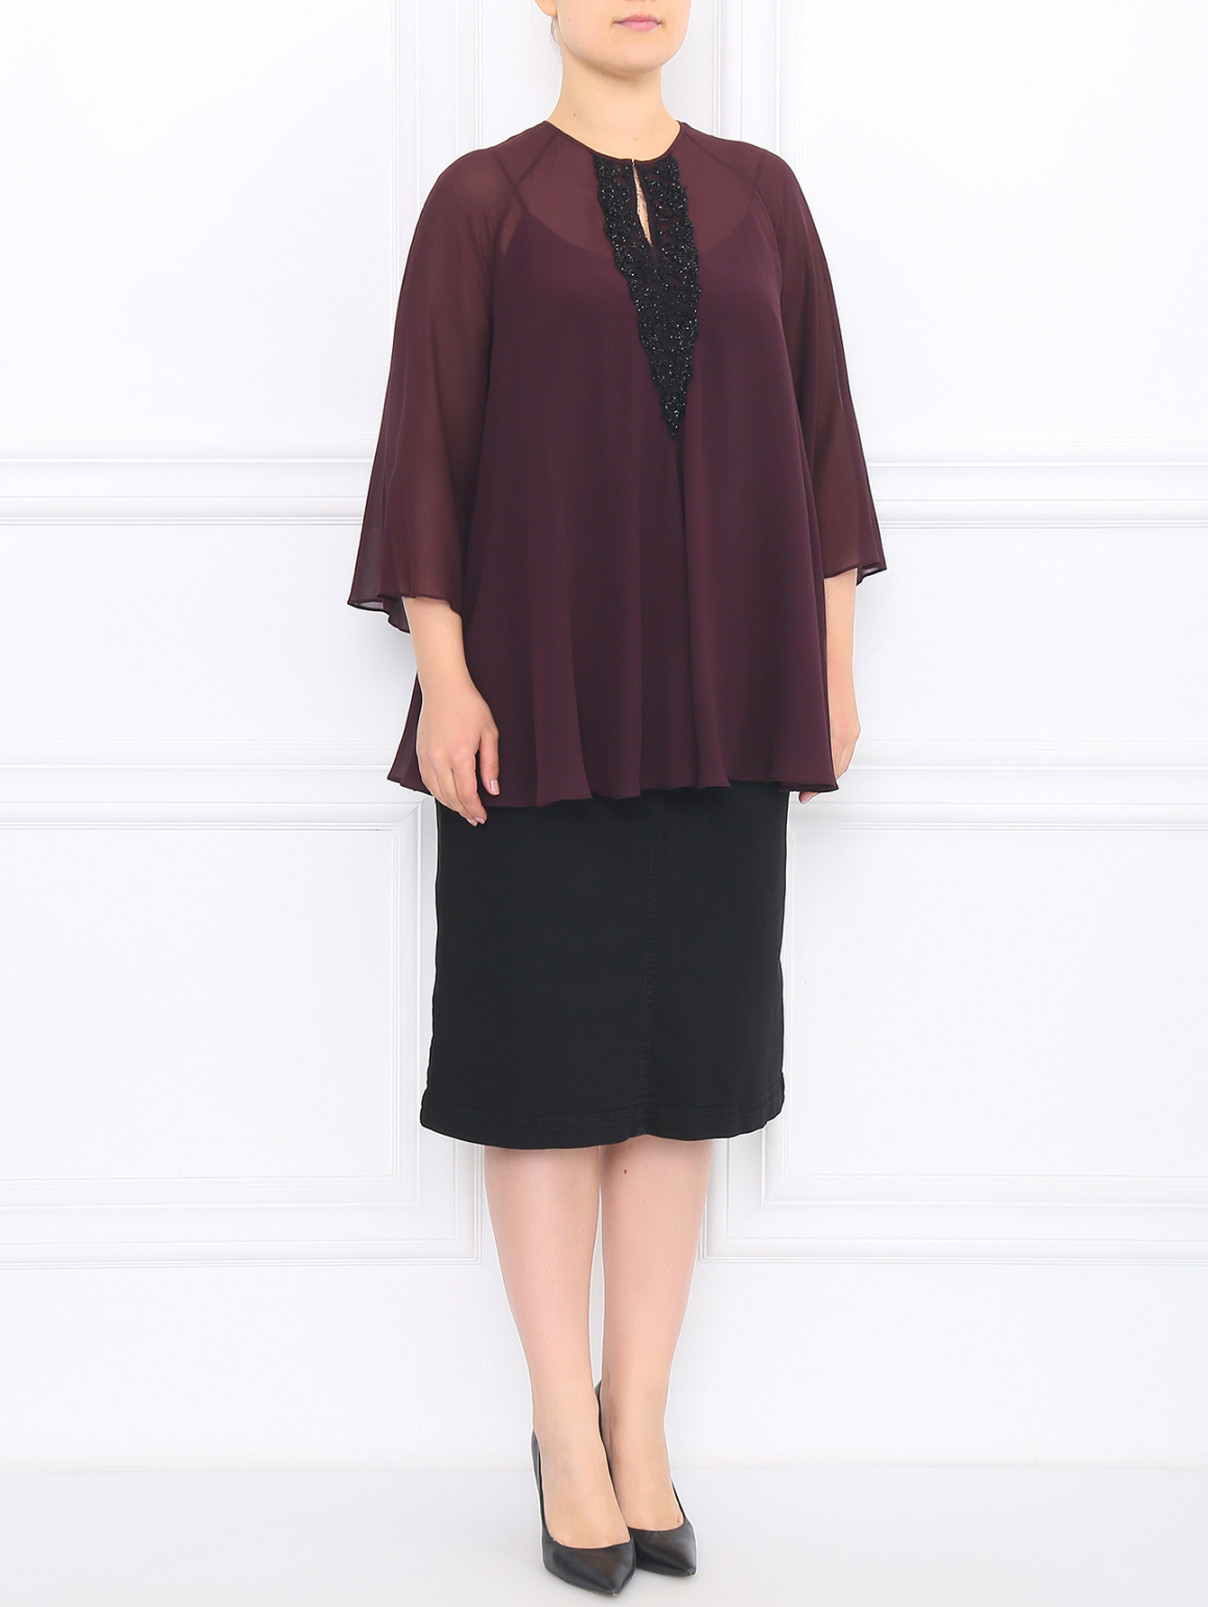 Блуза из шелка декорированная бисером Marina Rinaldi  –  Модель Общий вид  – Цвет:  Фиолетовый